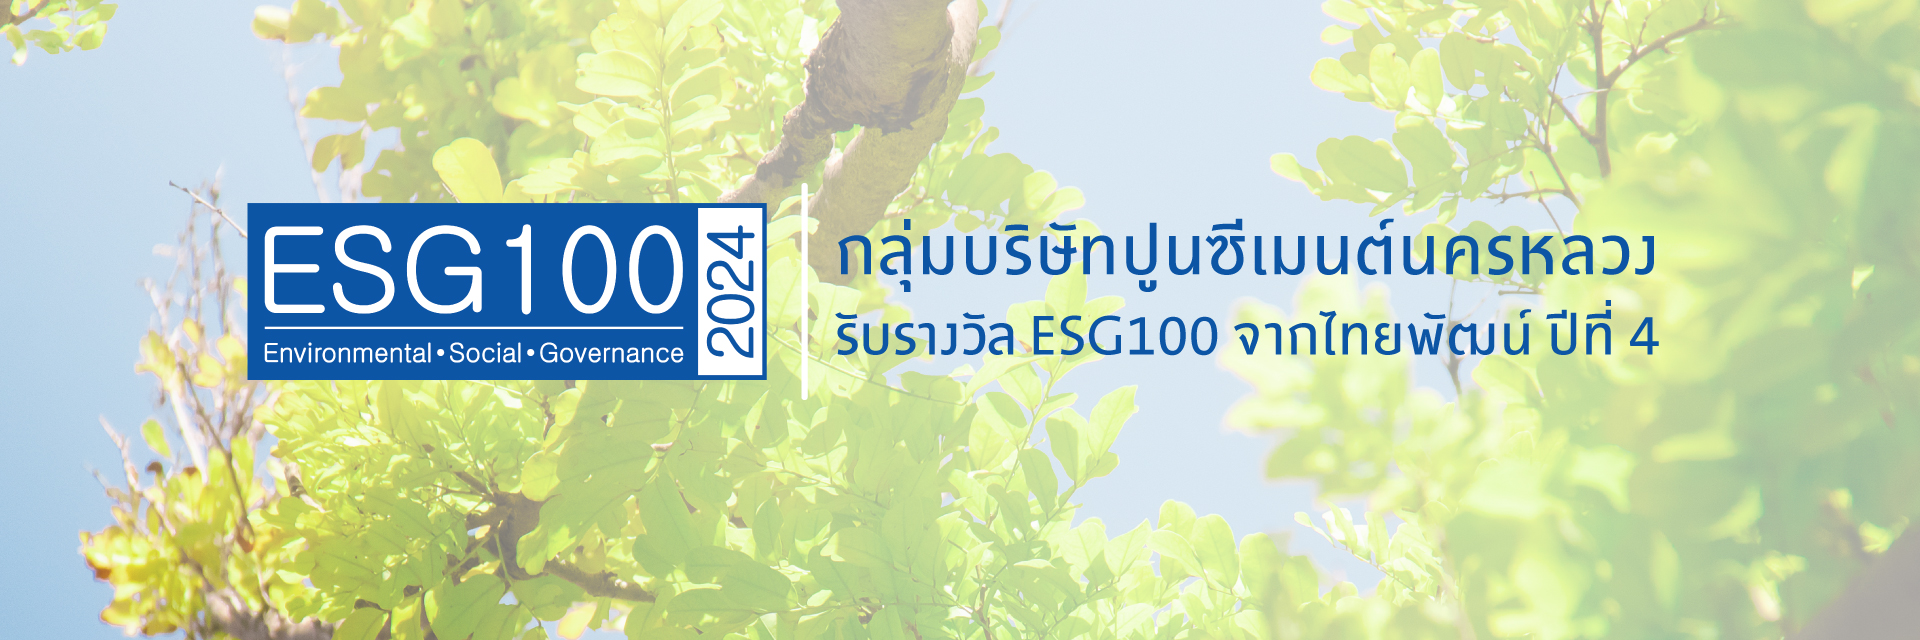 กลุ่มบริษัทปูนซีเมนต์นครหลวง รับรางวัล ESG100 จากไทยพัฒน์ ปีที่ 4 